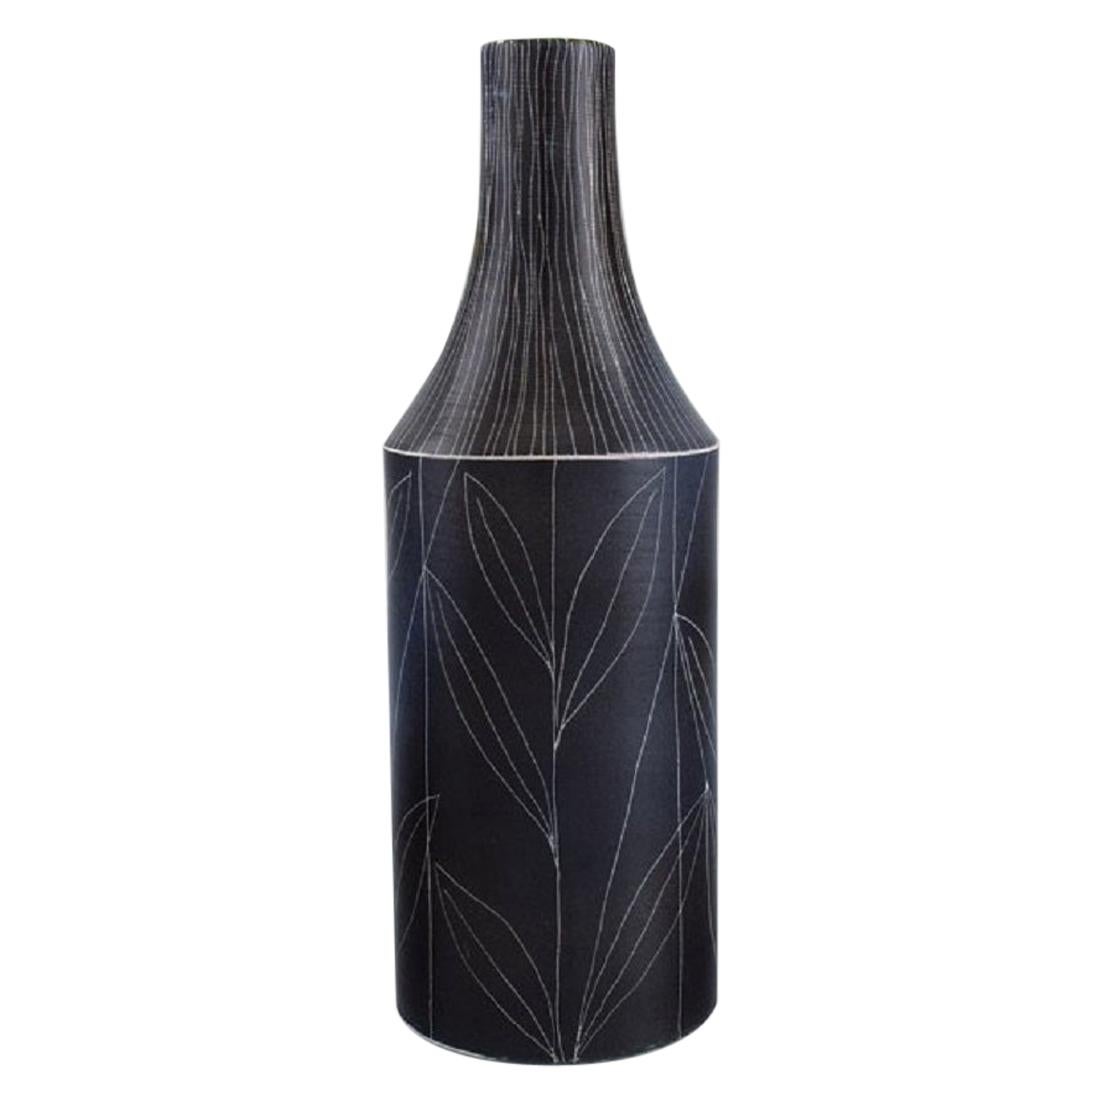 Mari Simmulson for Upsala-Ekeby, Vase in Glazed Stoneware